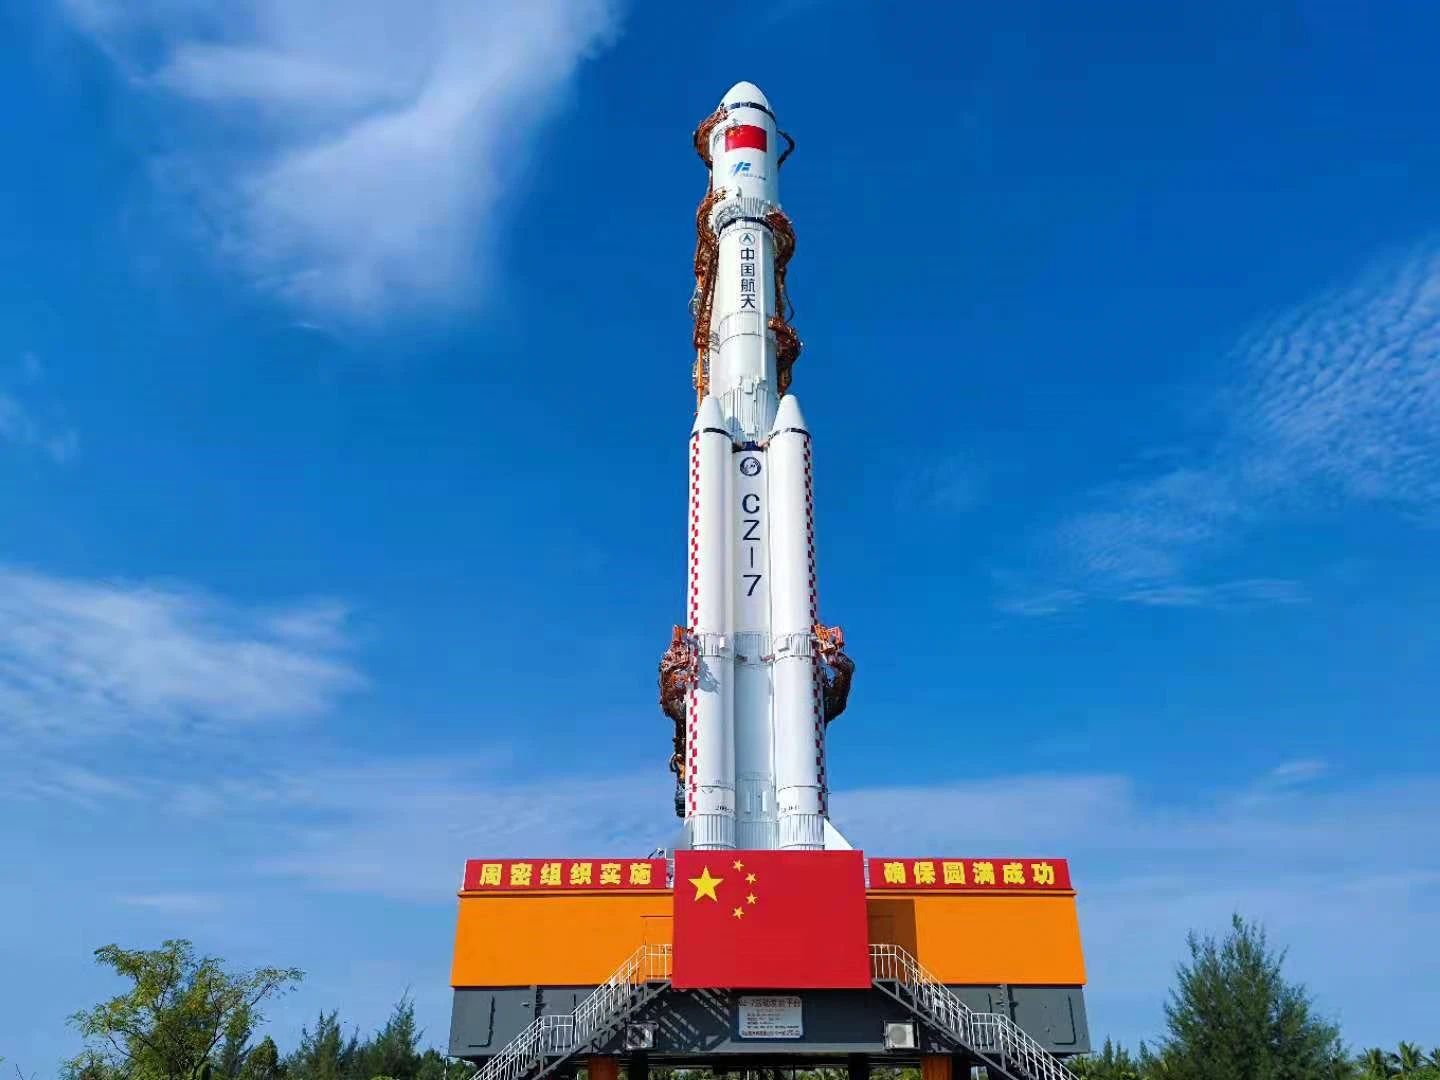 天舟三號貨運飛船船箭組合體垂直轉運至發射區。中國載人航天工程辦公室供圖